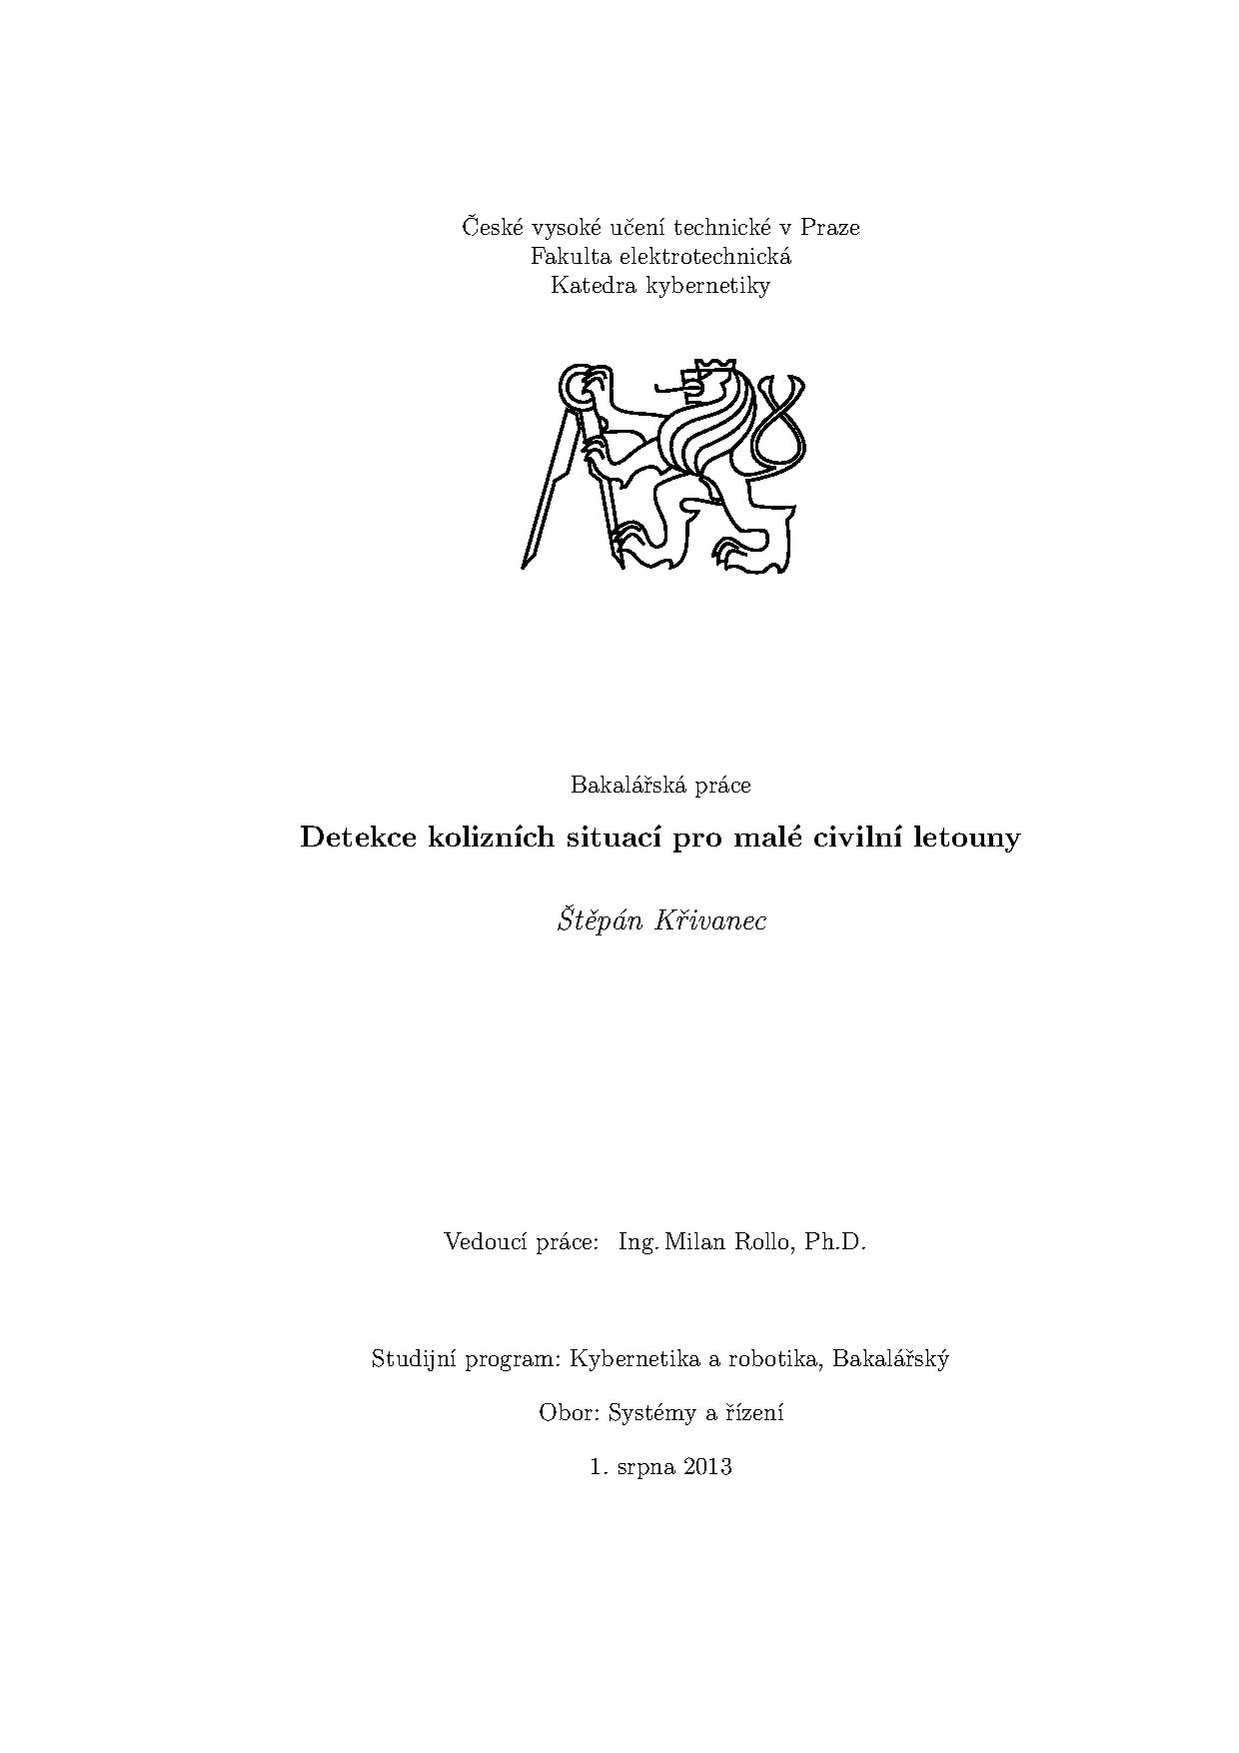 Bp 2013 krivanec stepan.pdf